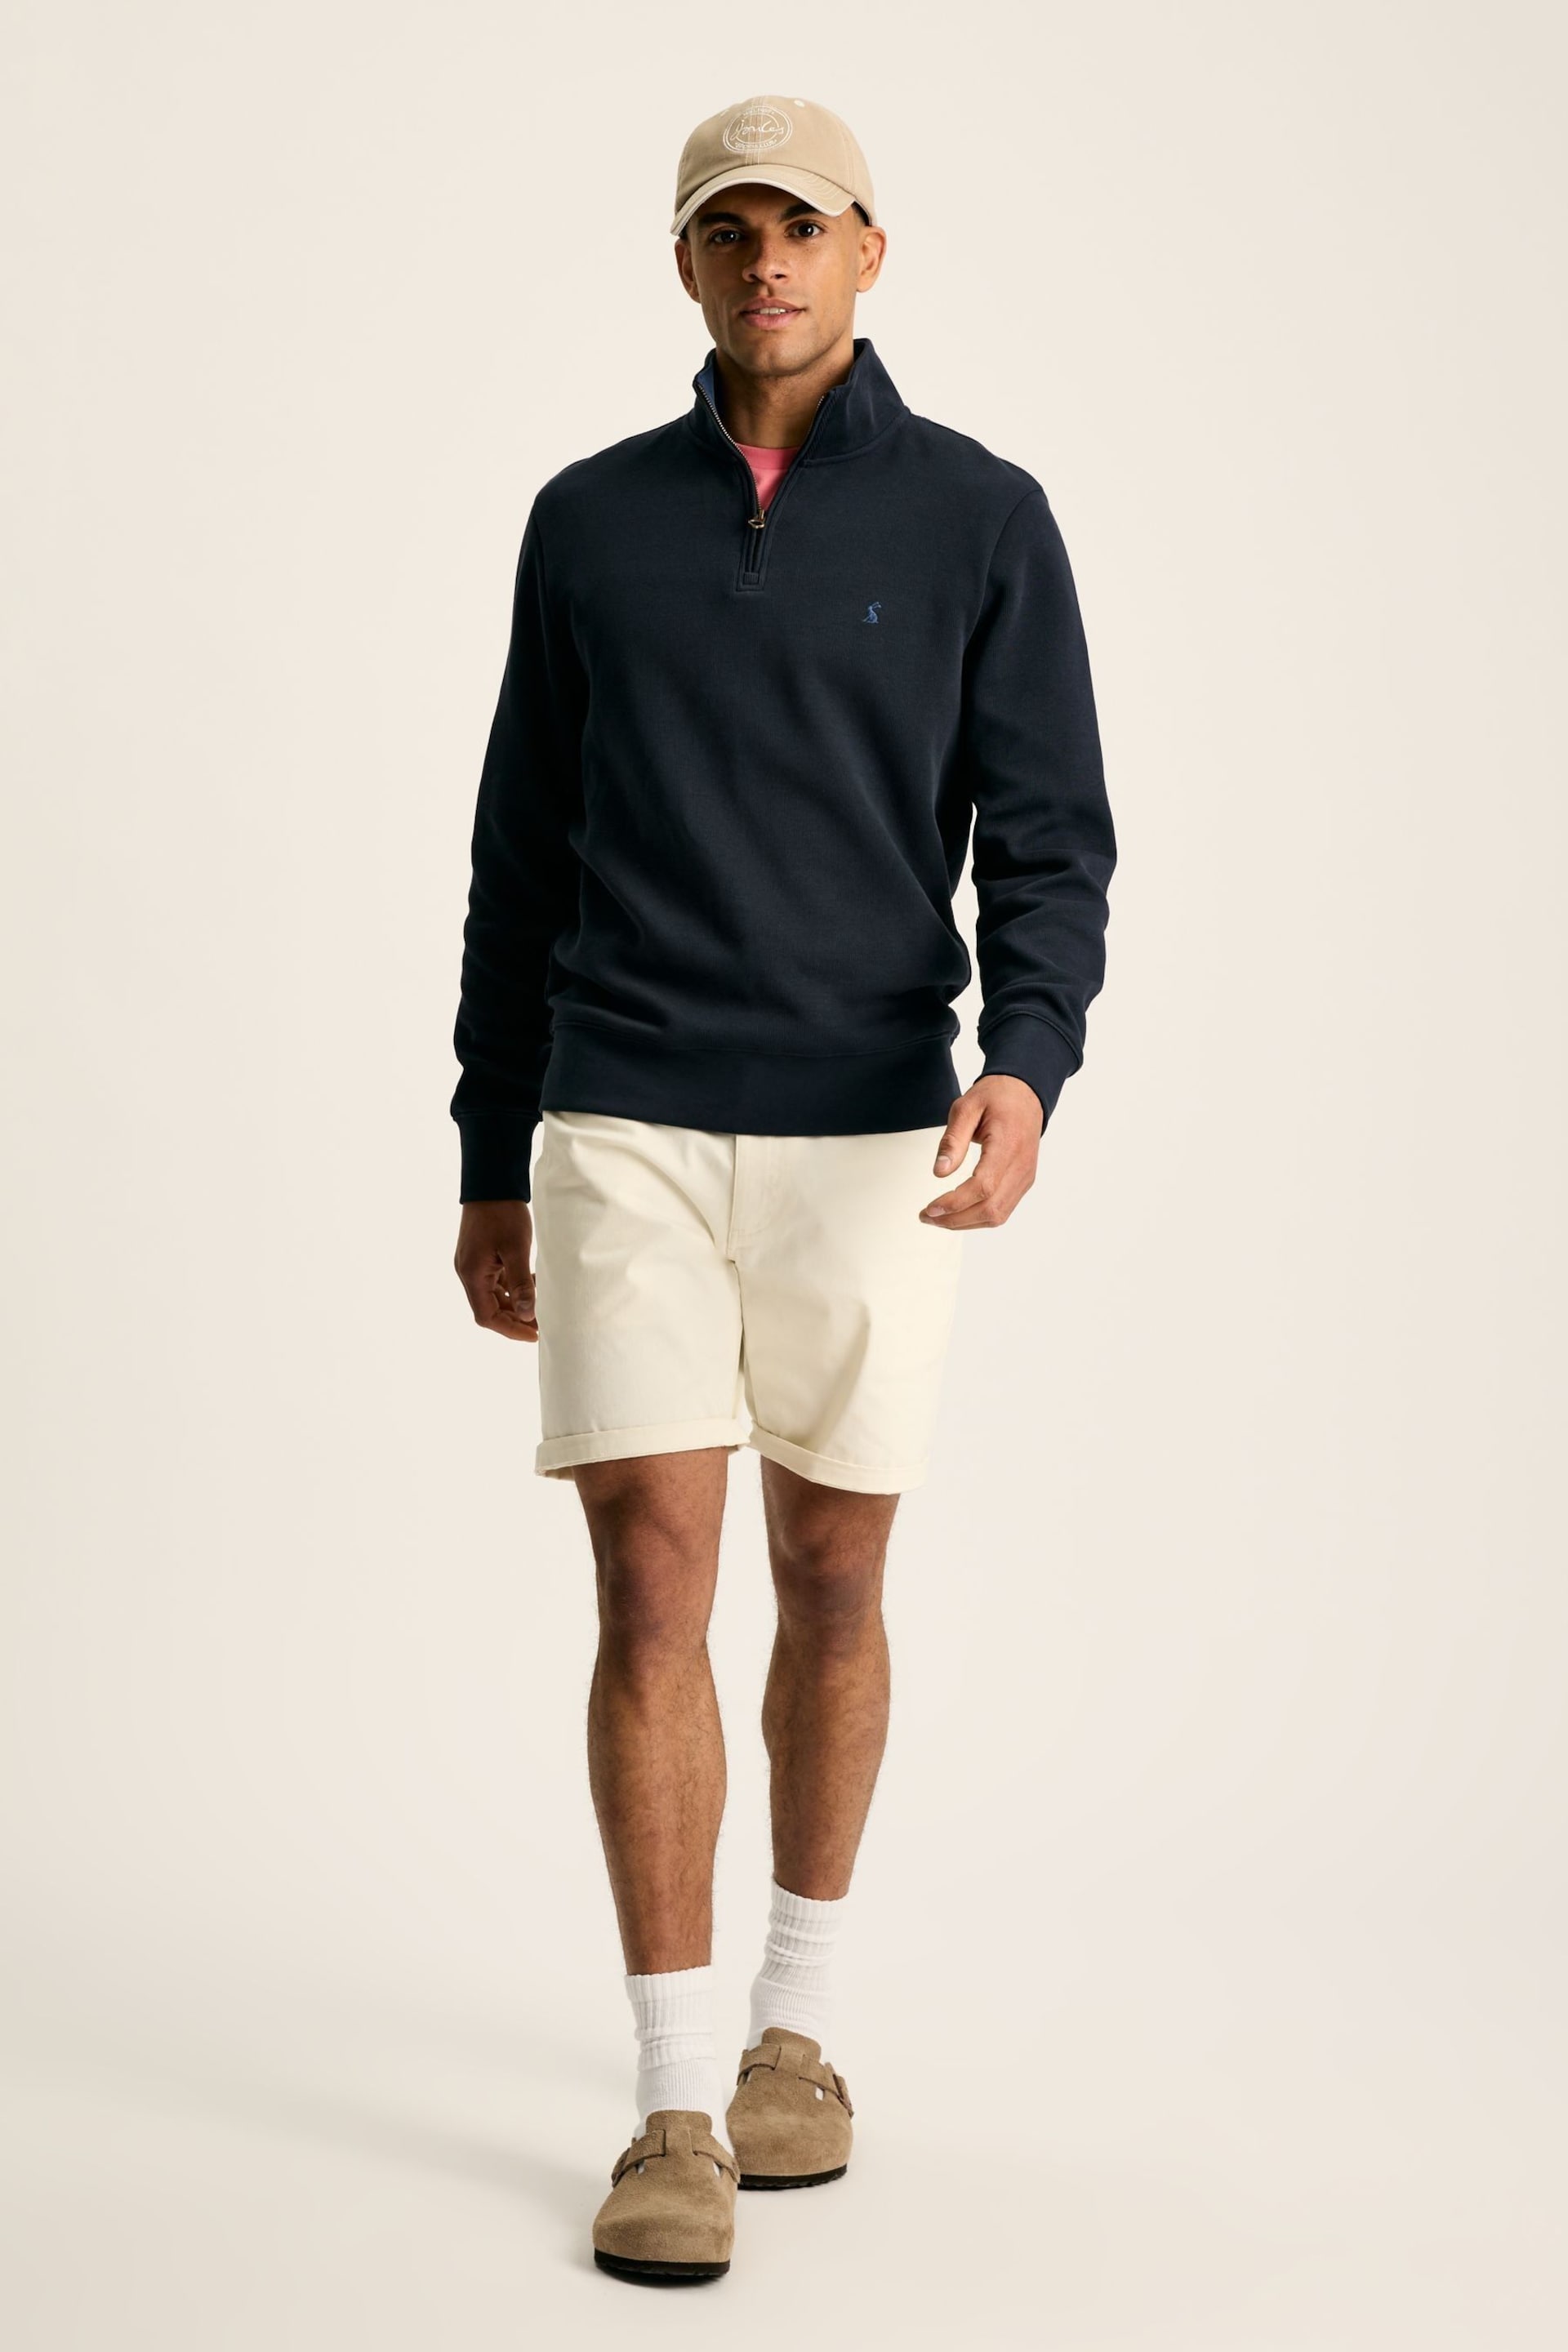 Joules Alistair Navy Quarter Zip Cotton Sweatshirt - Image 3 of 7